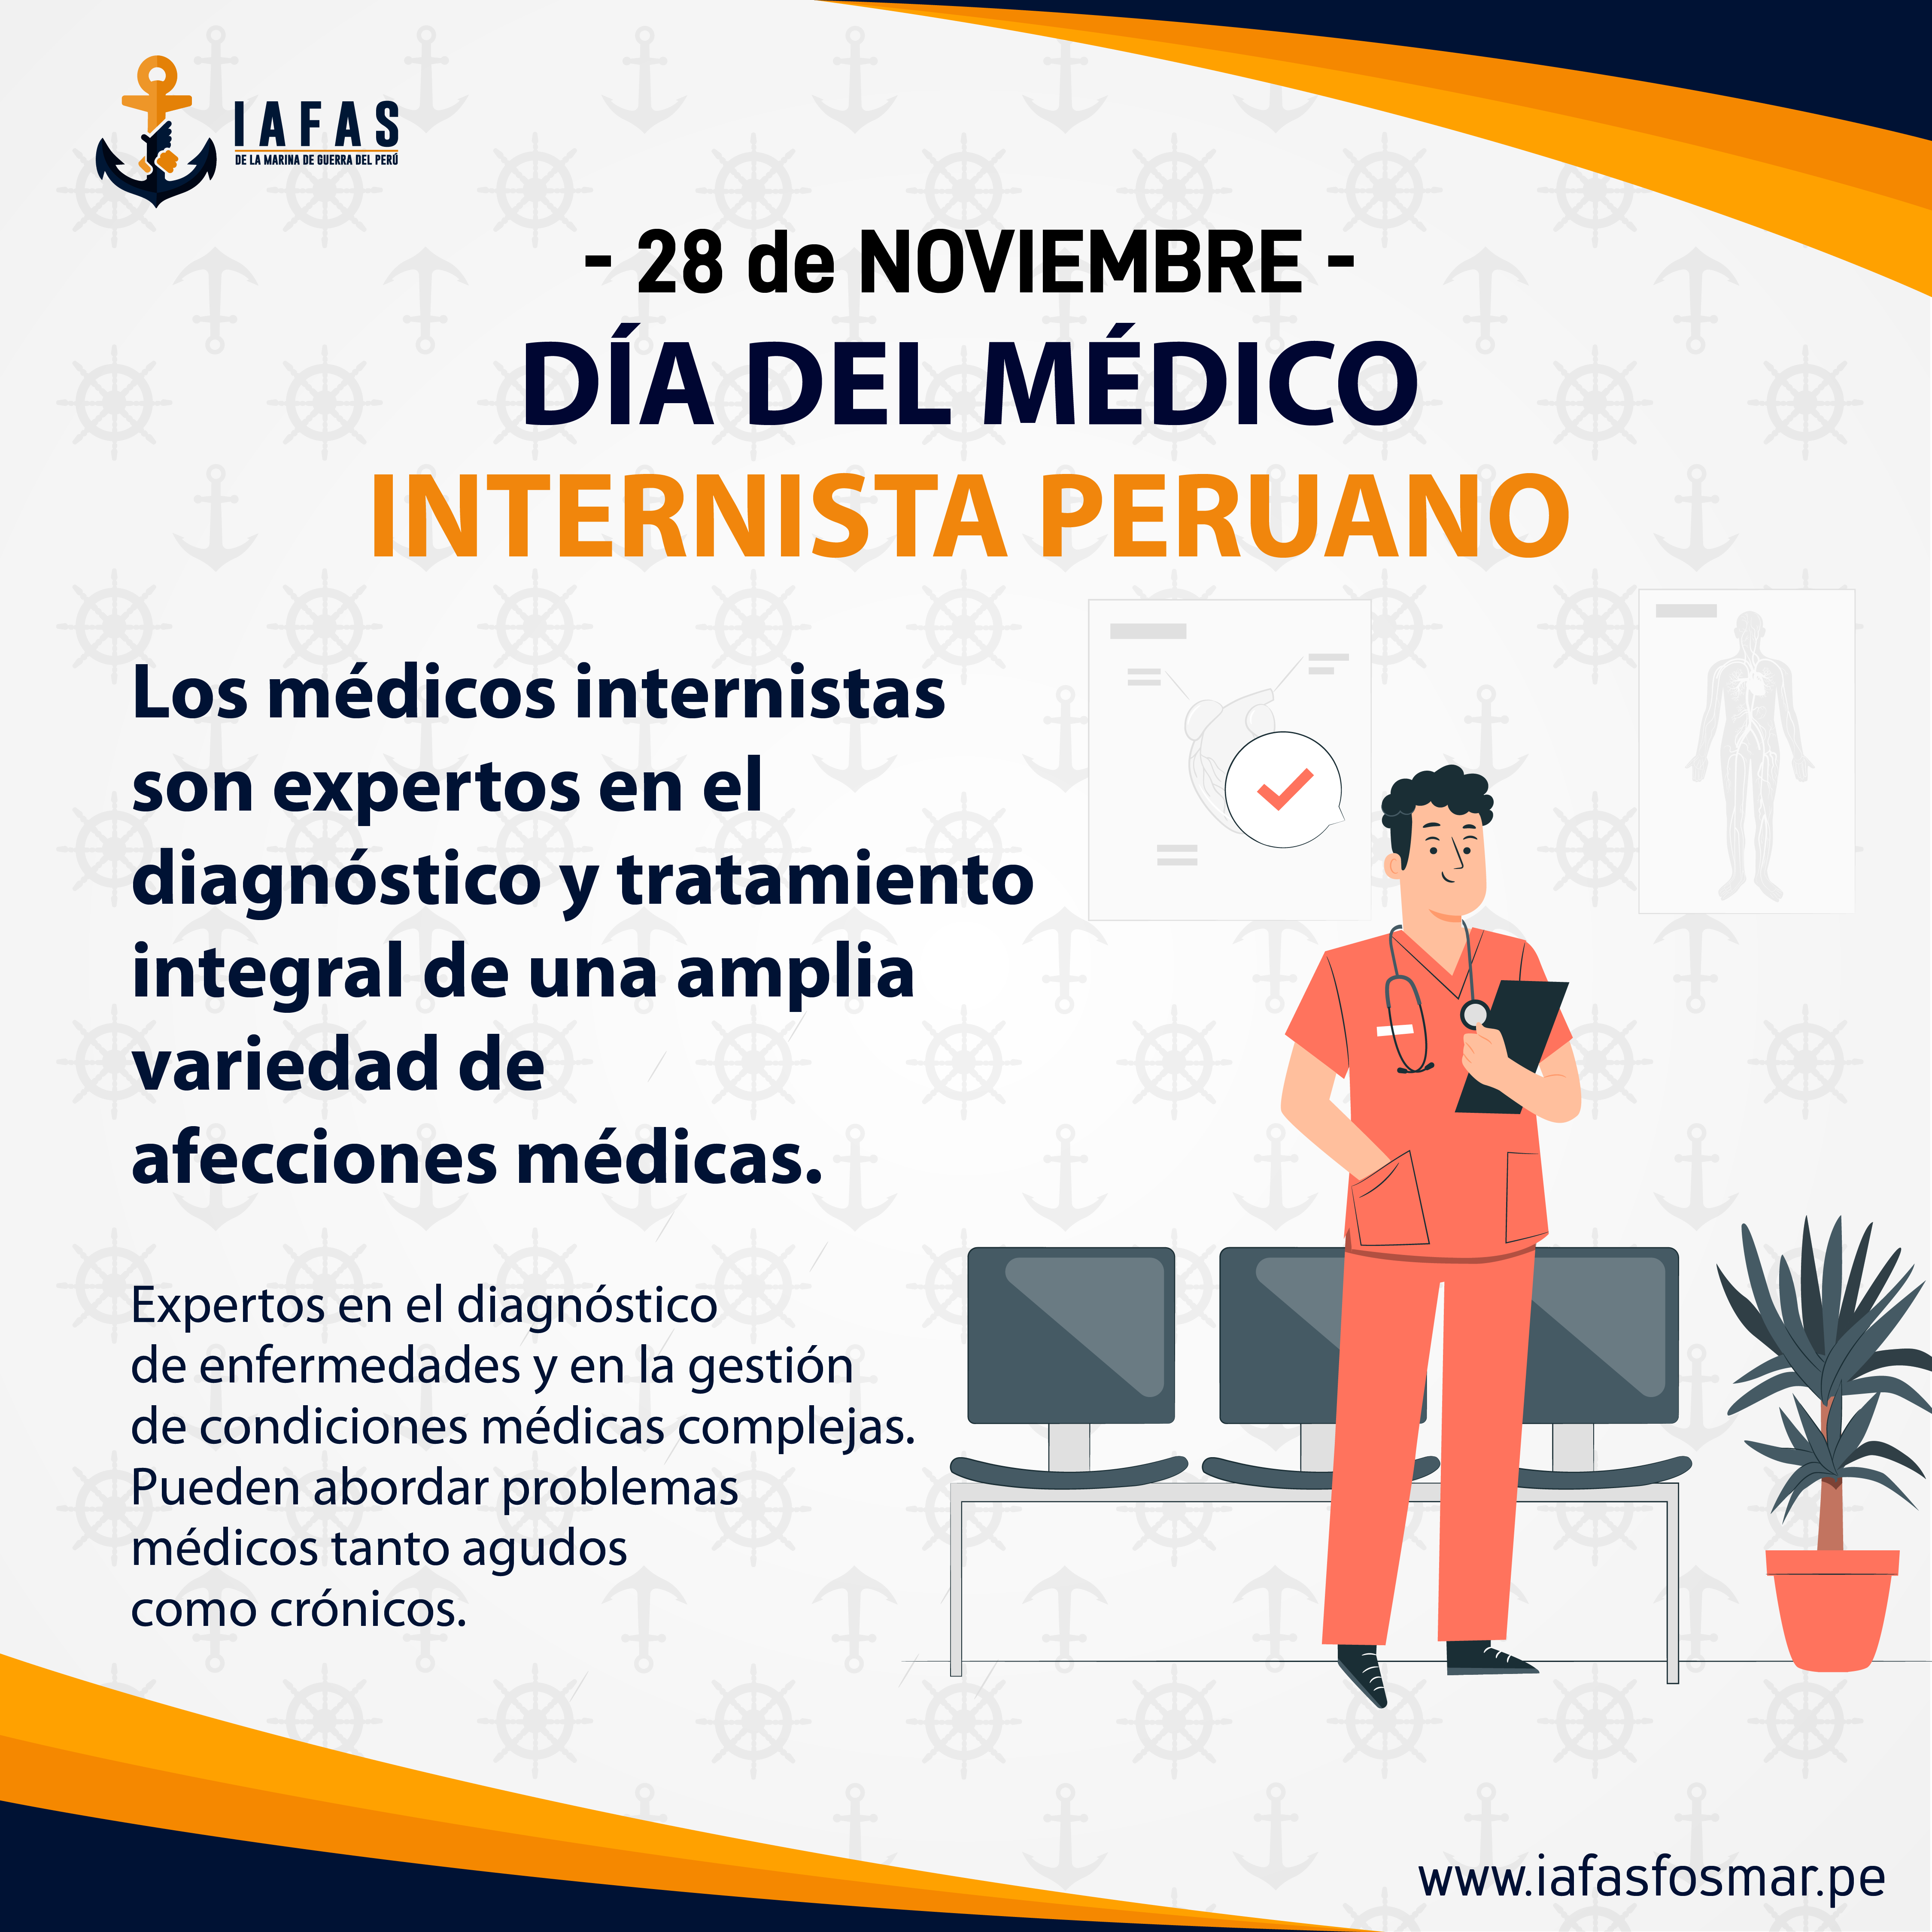 Día del médico internista peruano (28 de noviembre)